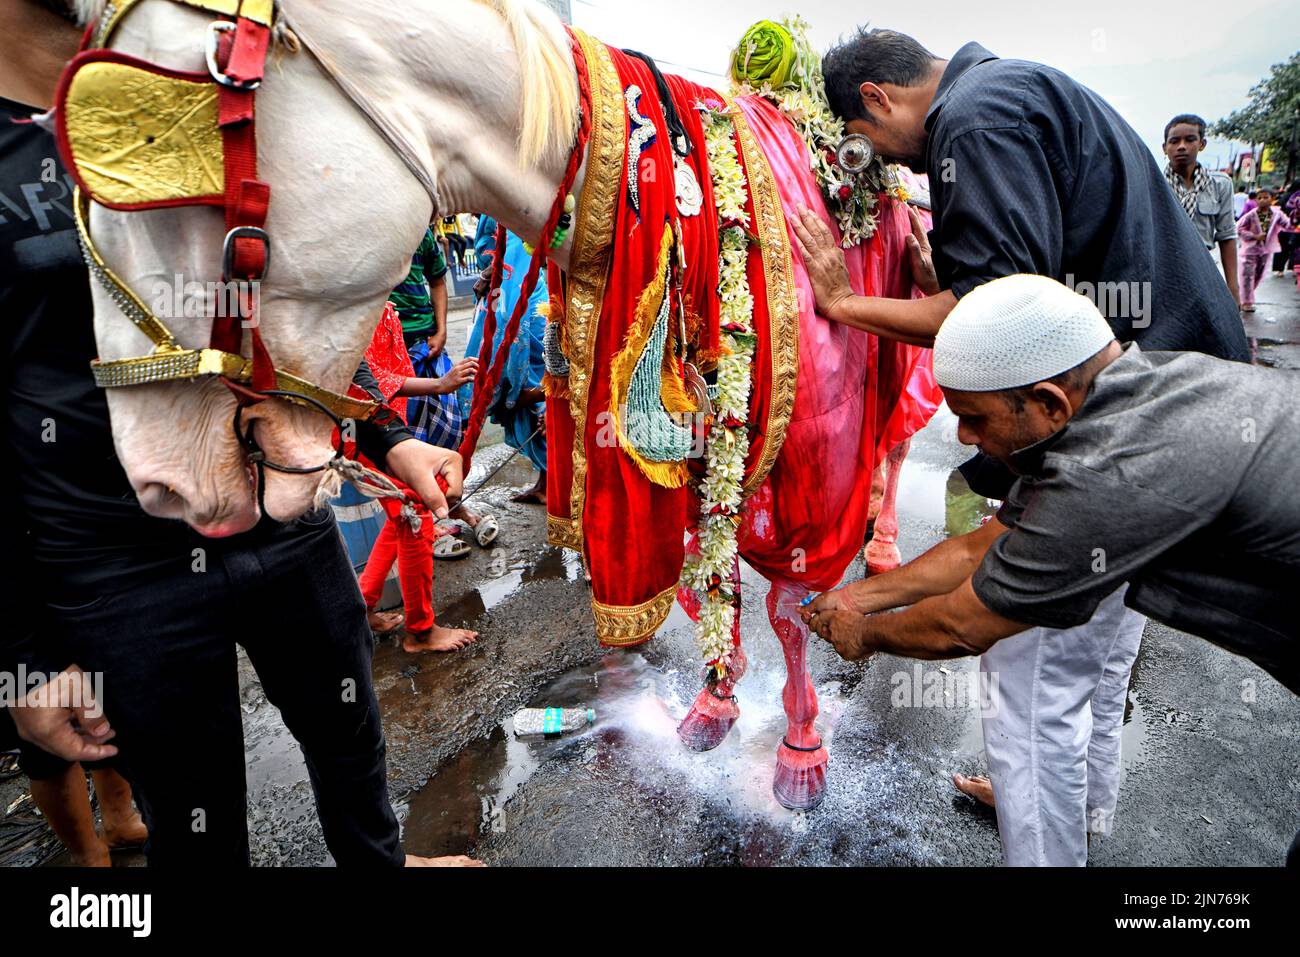 Devoto musulmán chiíta visto con un caballo santo durante la procesión Muharram de Kolkata. Muharram es el primer mes del calendario islámico y Ashura es el décimo día del mes de Muharram en el que se celebra la conmemoración del martirio del imán Hussain, nieto del profeta Mahoma (PBUH), durante la batalla de Karbala. Es parte del duelo por los musulmanes chiítas y un día de ayuno para los musulmanes sunitas que se observa en todo el mundo. Foto de stock